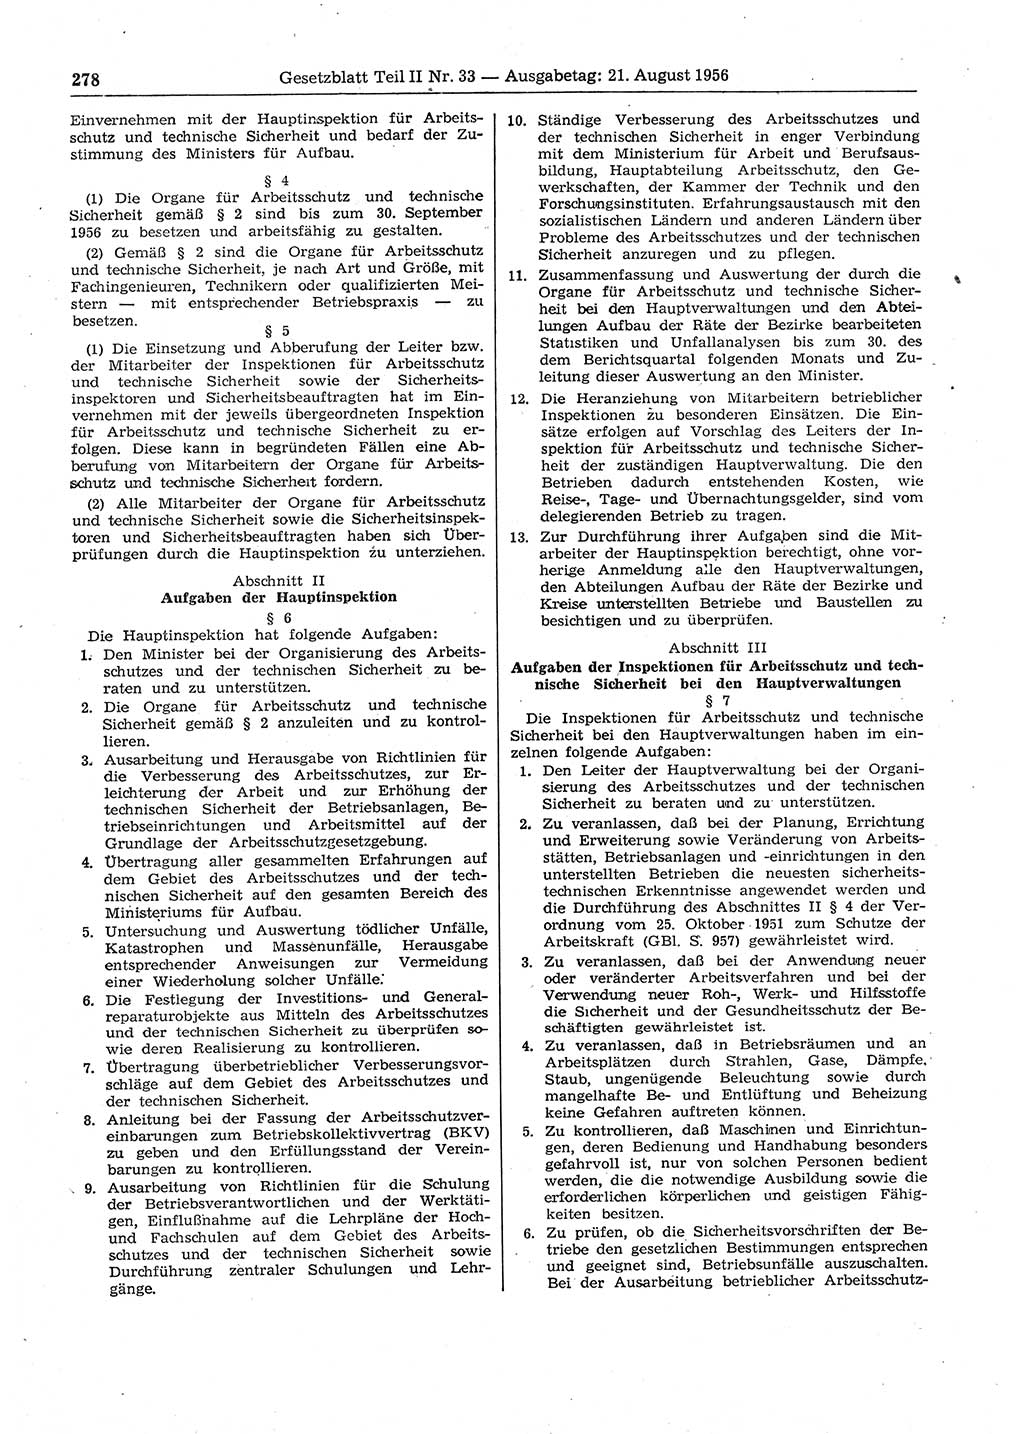 Gesetzblatt (GBl.) der Deutschen Demokratischen Republik (DDR) Teil ⅠⅠ 1956, Seite 278 (GBl. DDR ⅠⅠ 1956, S. 278)